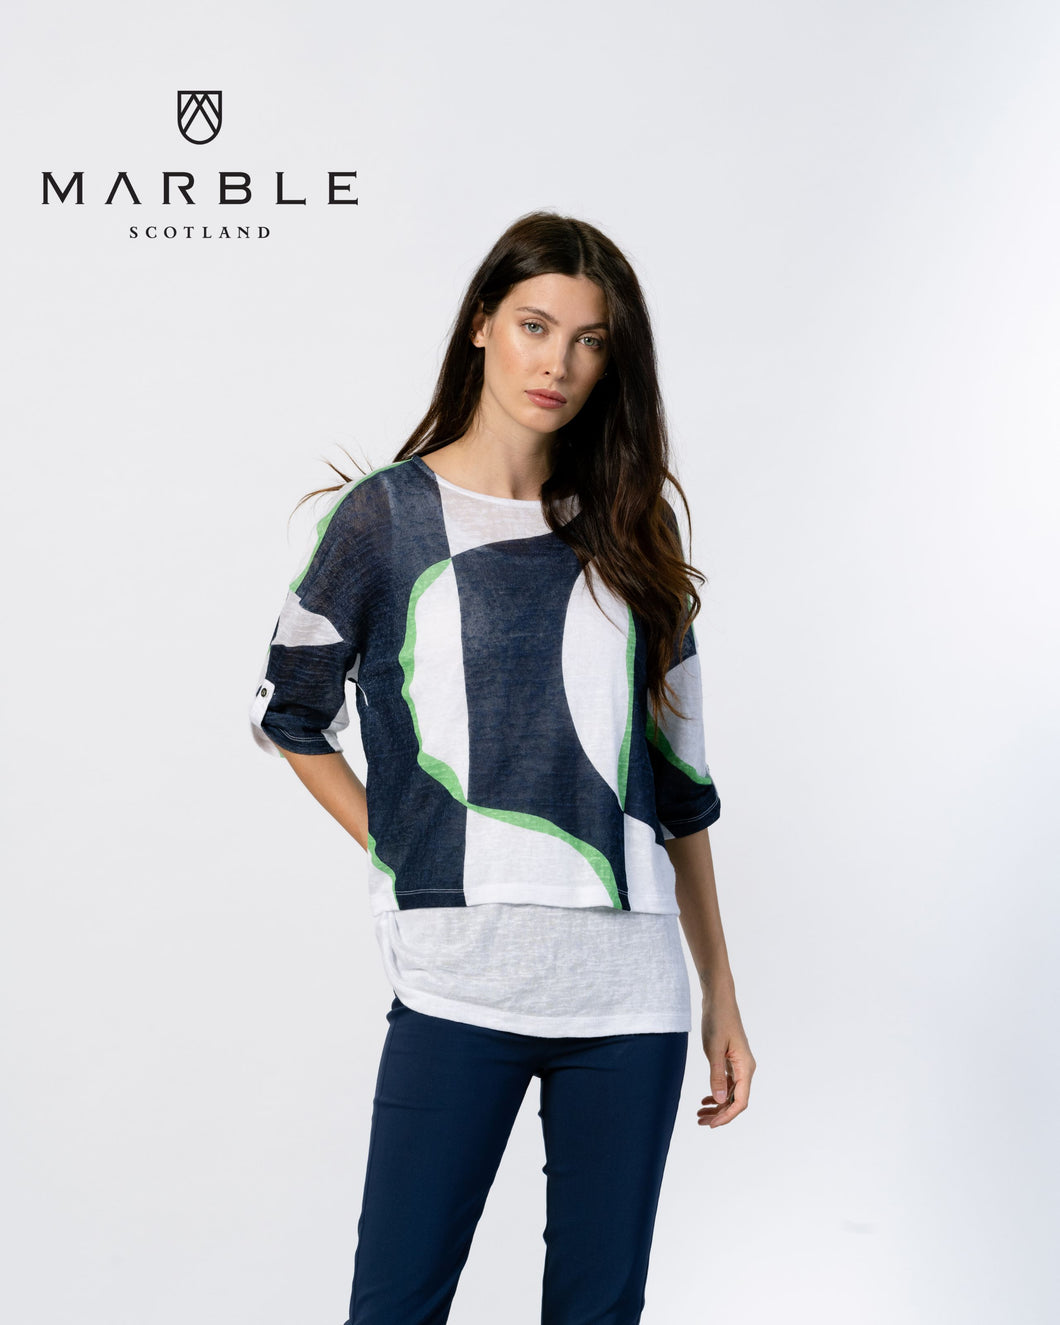 Marble Top w/ Vest 2 Colours